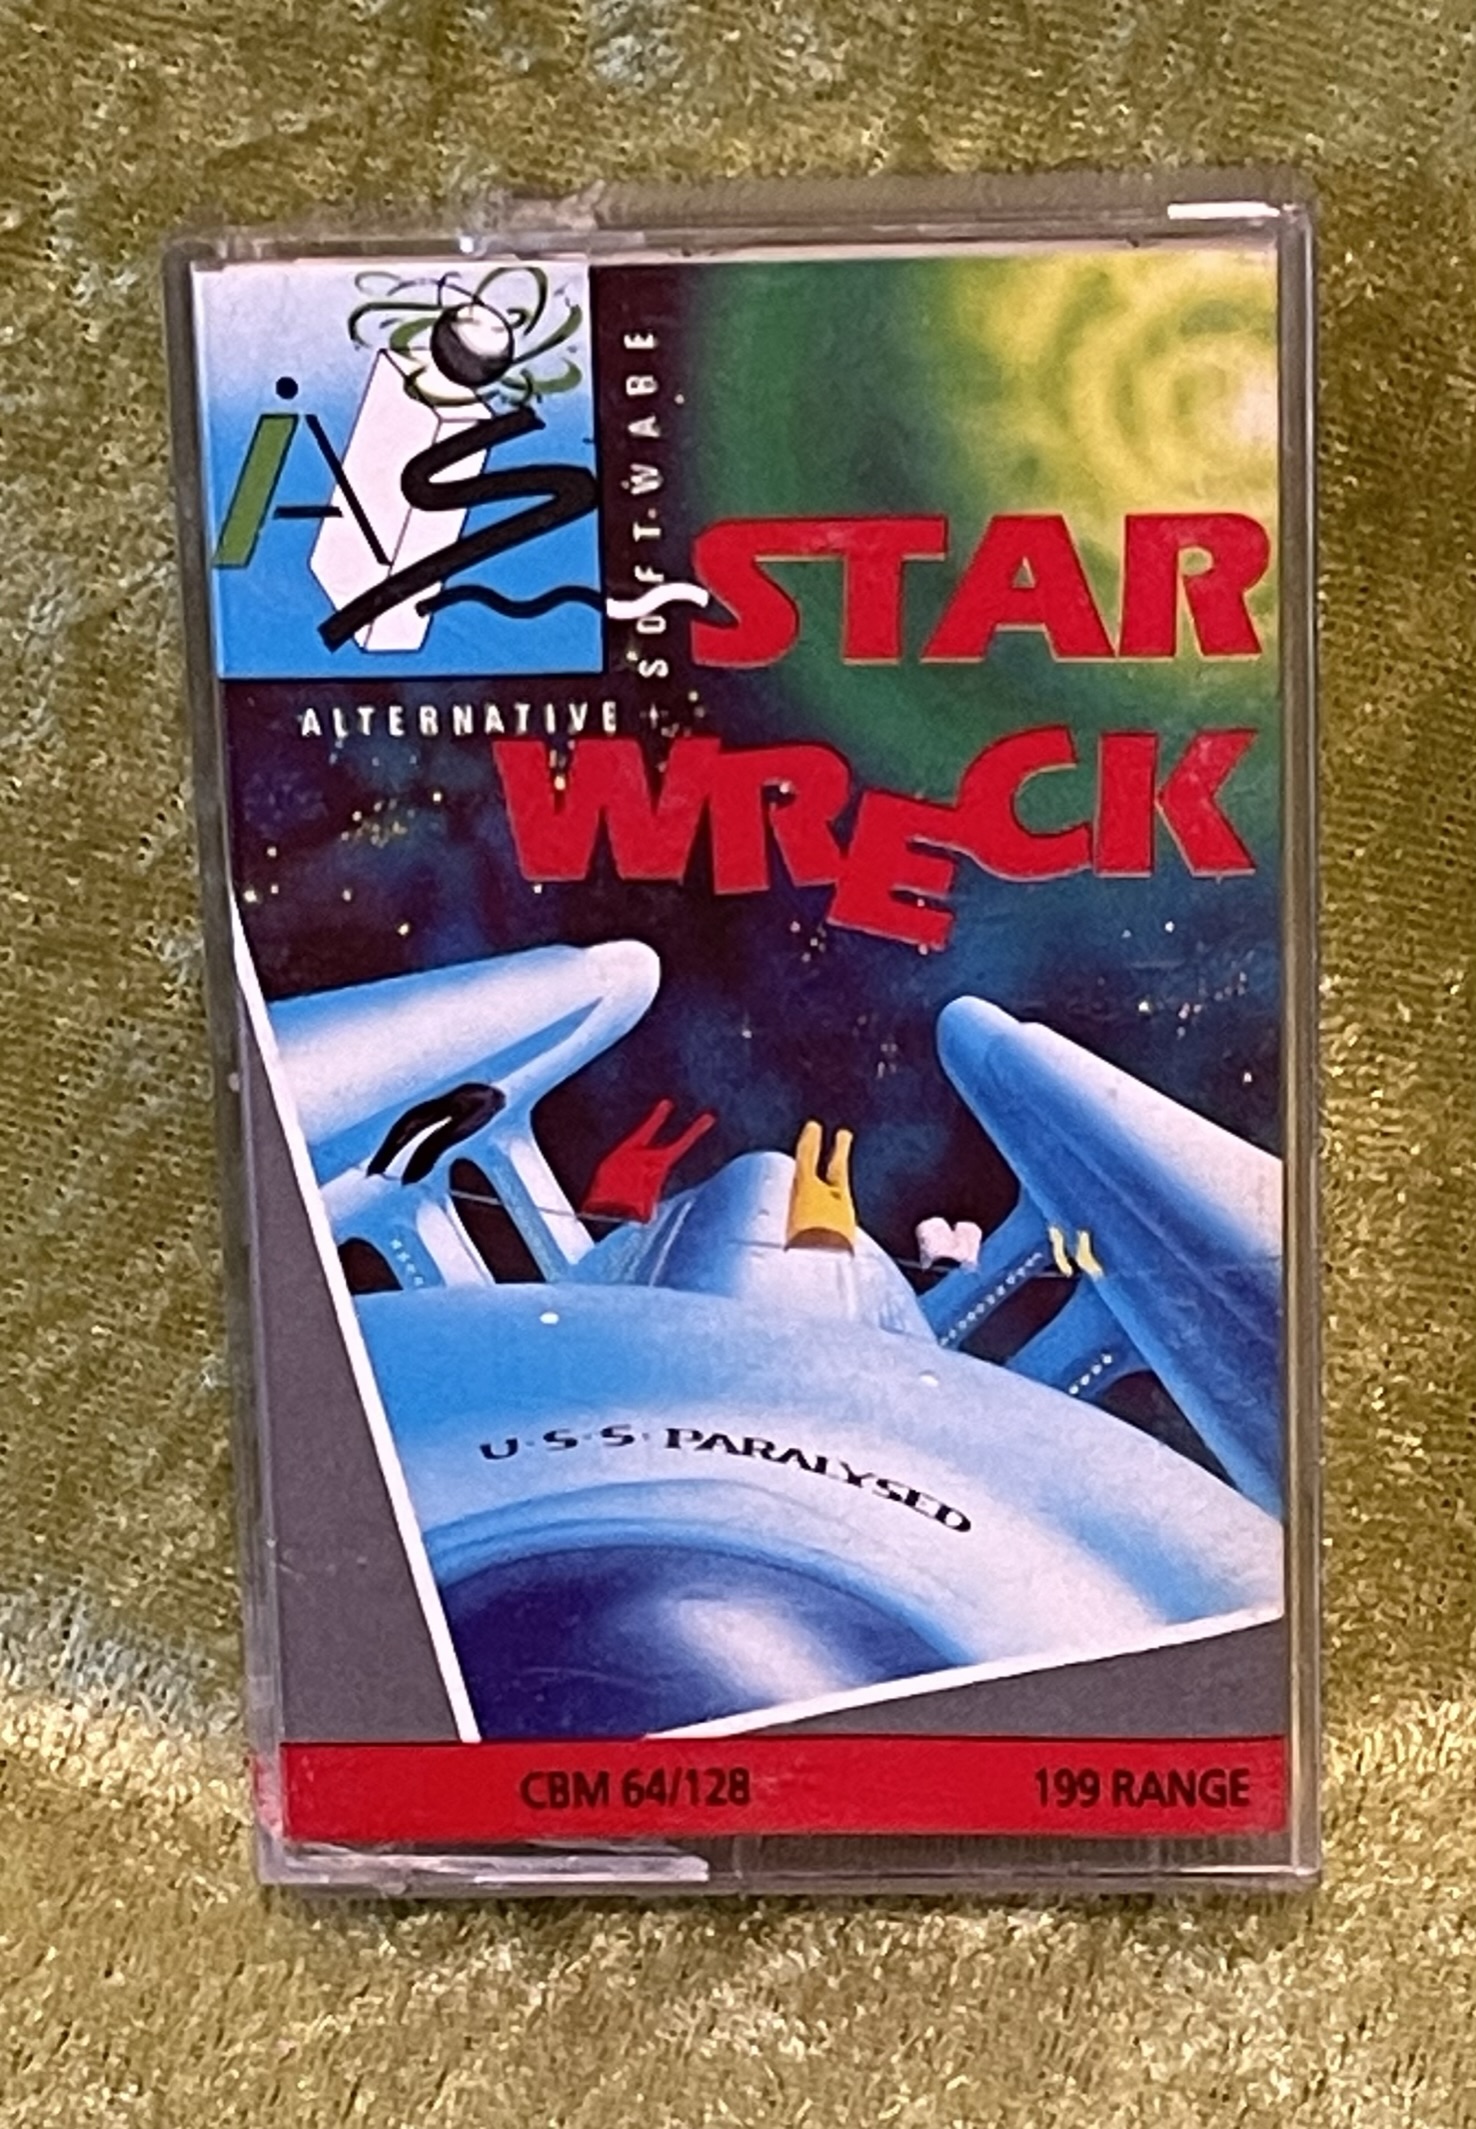 Star Wreck